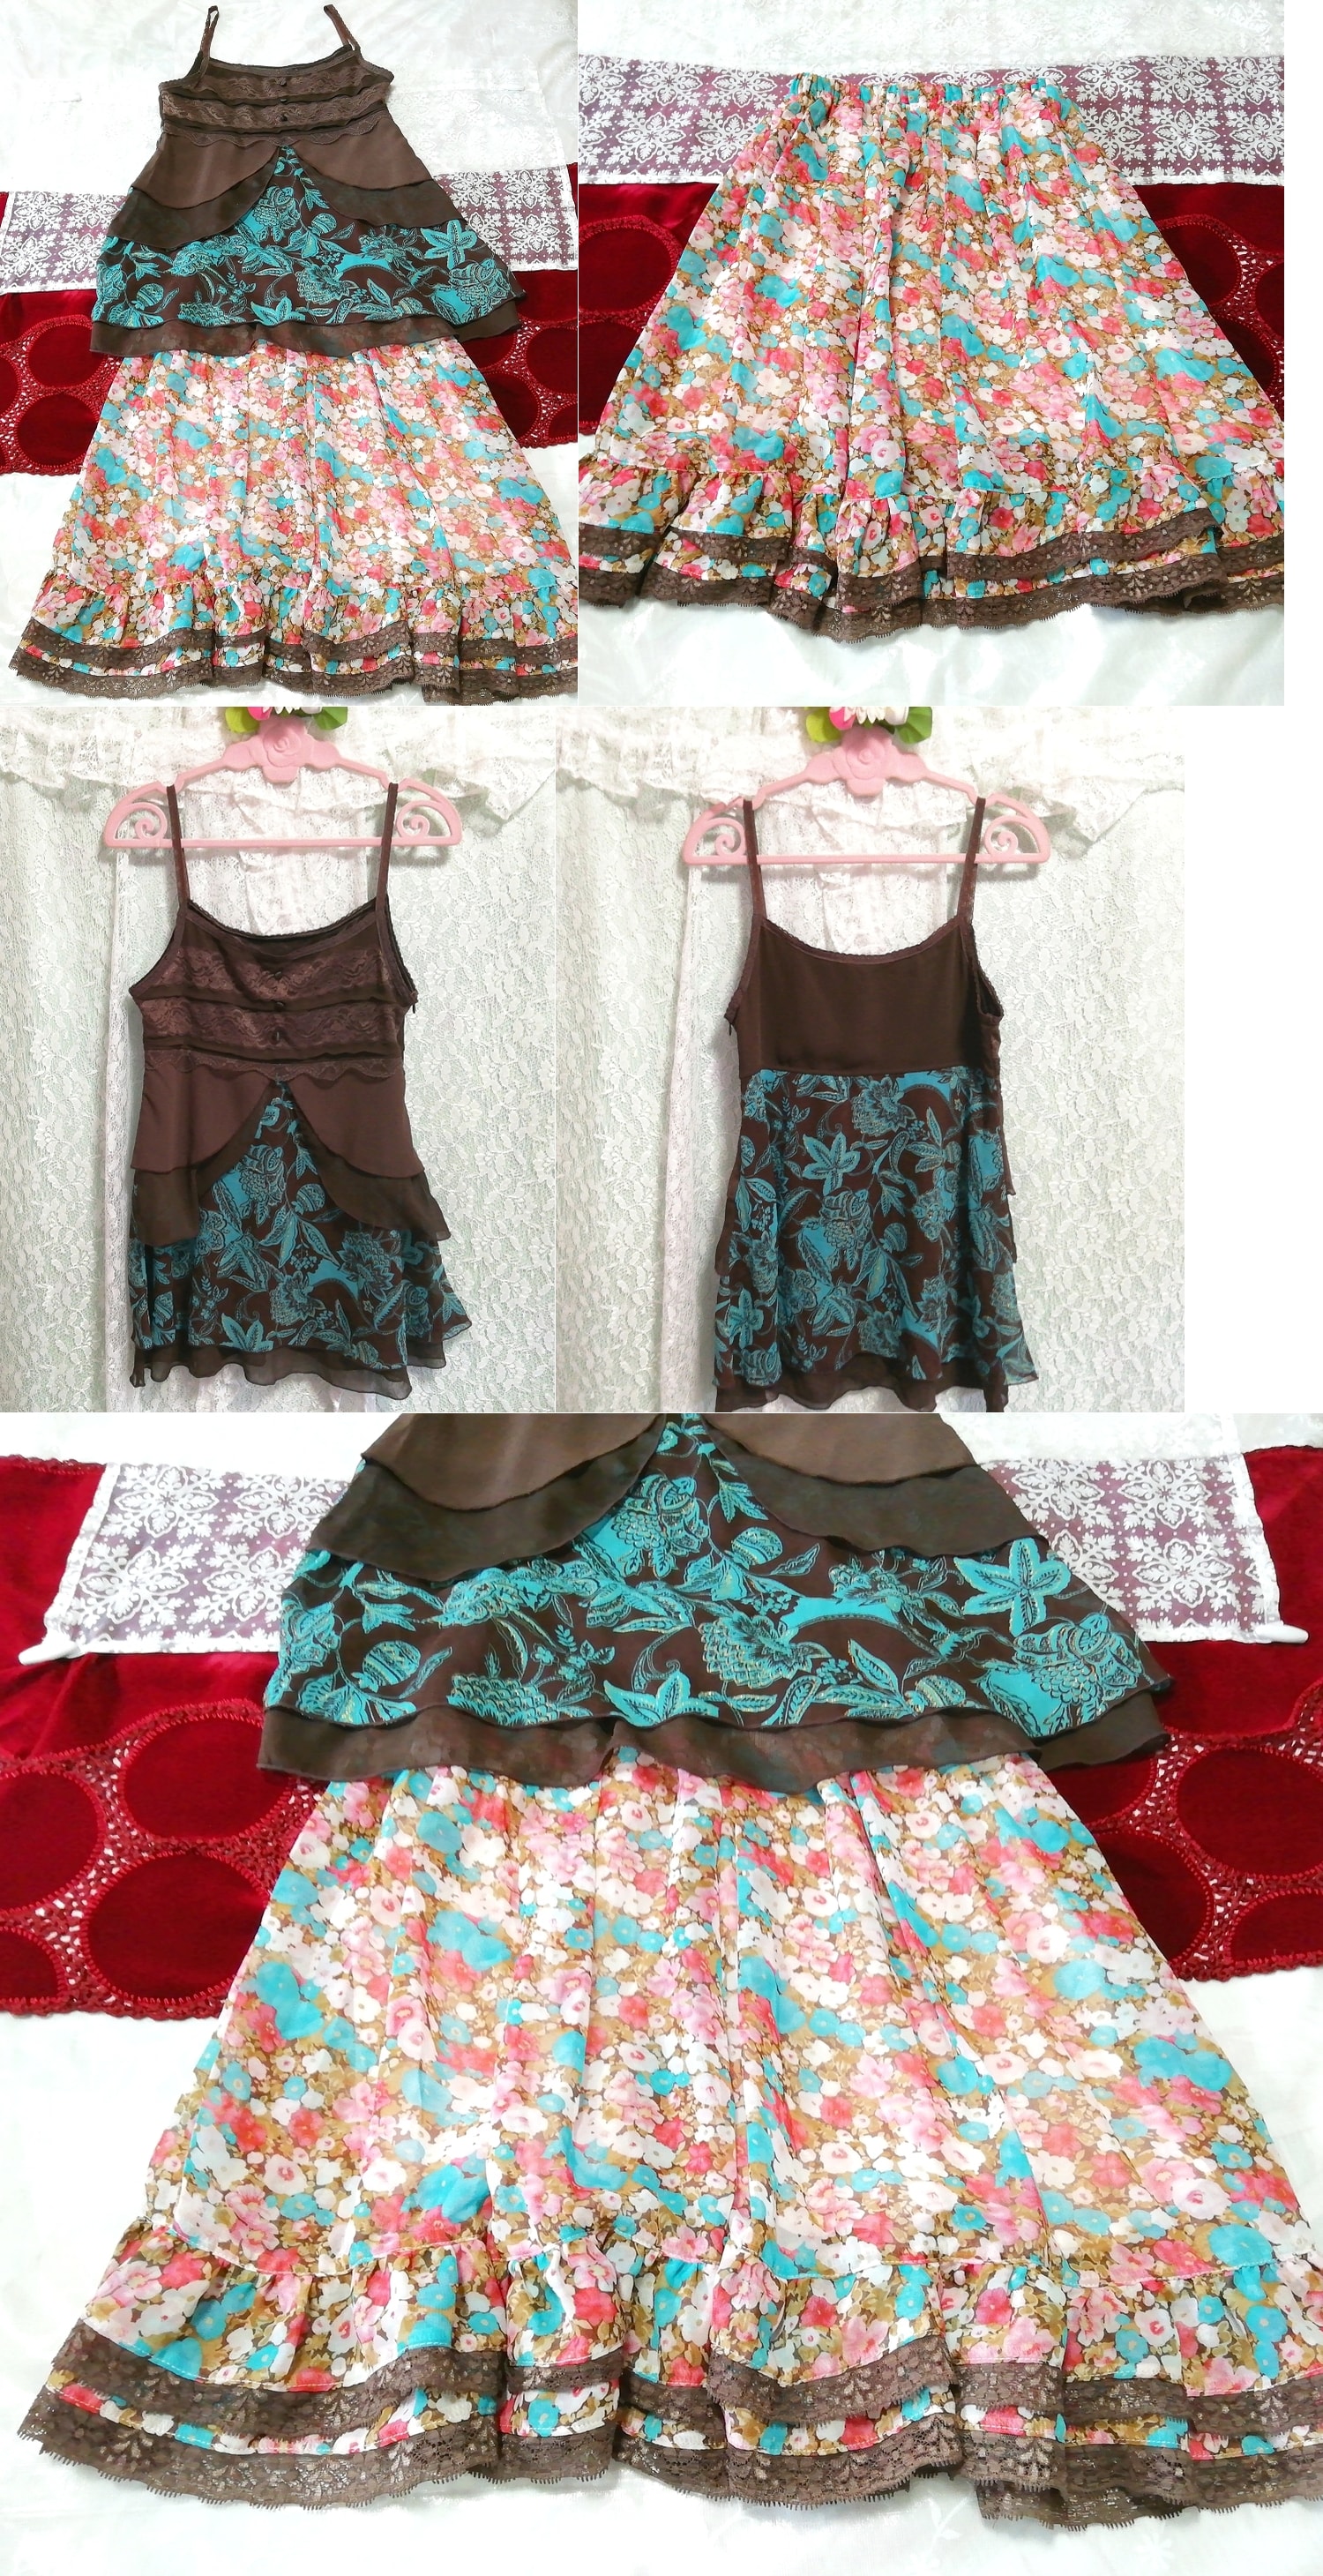 에스닉 쉬폰 캐미솔 네글리제 나이트가운 하늘색 홍백 꽃무늬 플레어 미니스커트 2P, 패션, 숙녀 패션, 잠옷, 잠옷